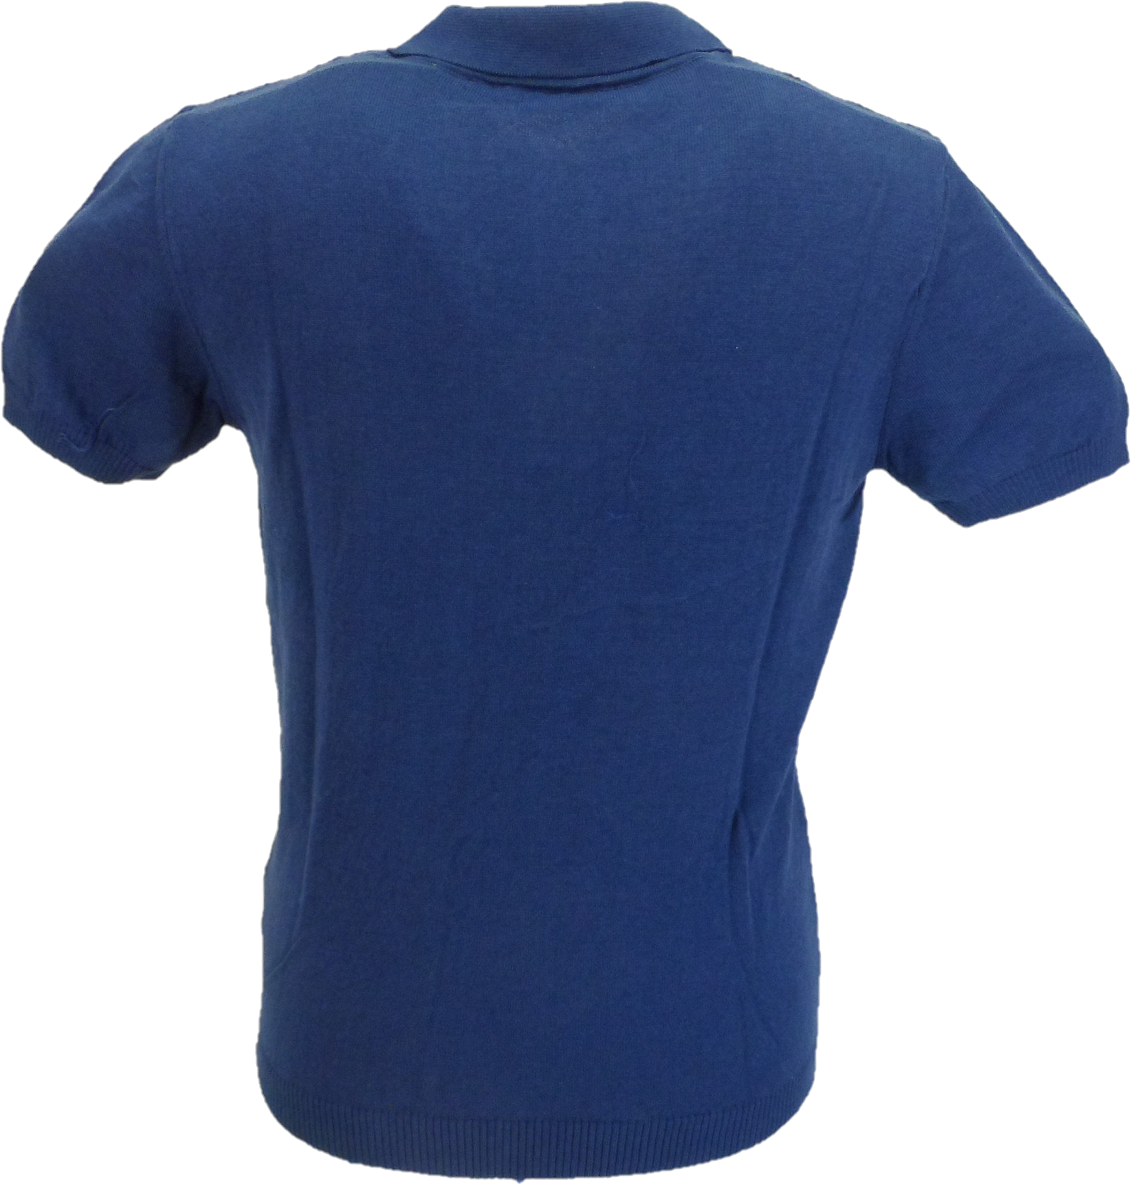 Relco polos tricotés à motifs rétro bleu foncé pour hommes